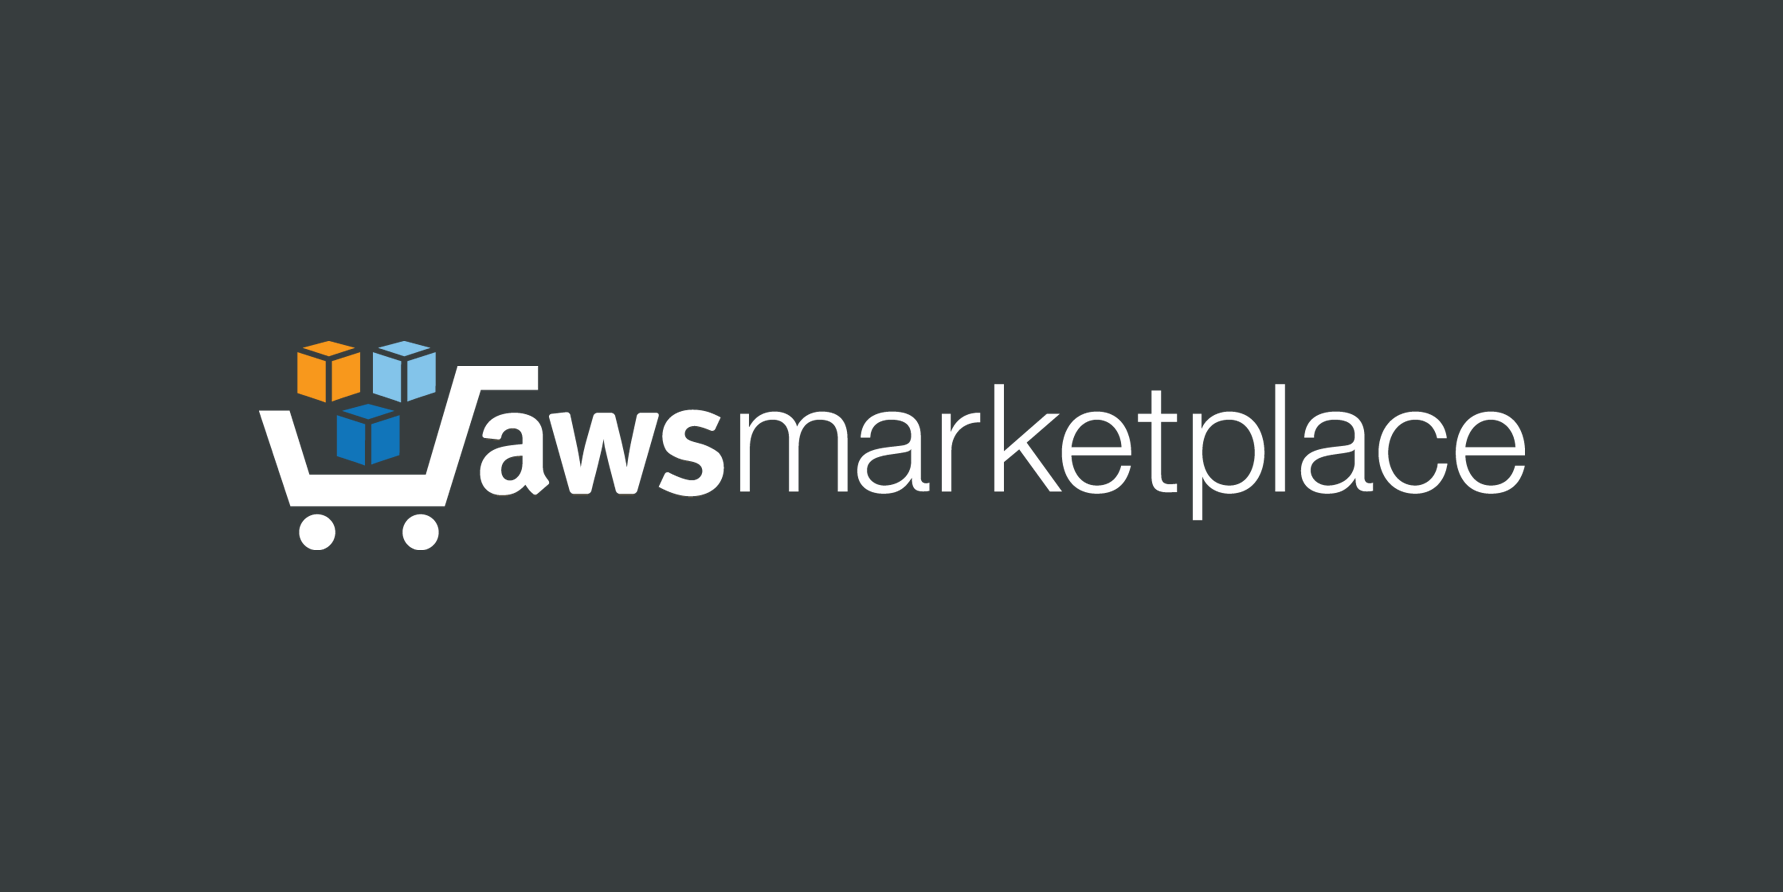 Image of AWS Market place logo